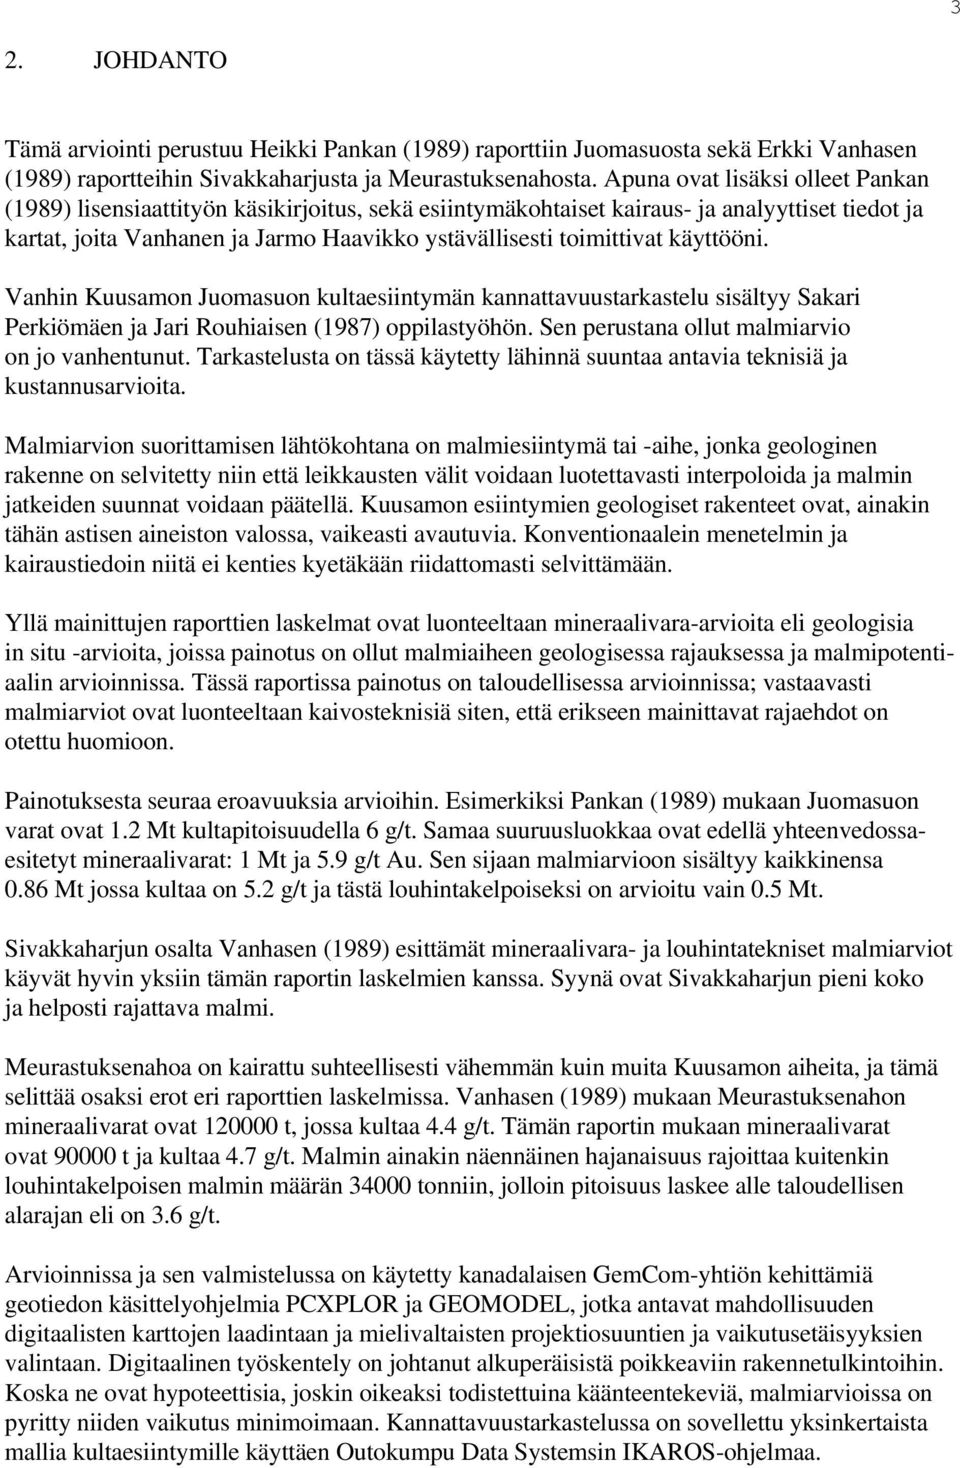 käyttööni. Vanhin Kuusamon Juomasuon kultaesiintymän kannattavuustarkastelu sisältyy Sakari Perkiömäen ja Jari Rouhiaisen (1987) oppilastyöhön. Sen perustana ollut malmiarvio on jo vanhentunut.